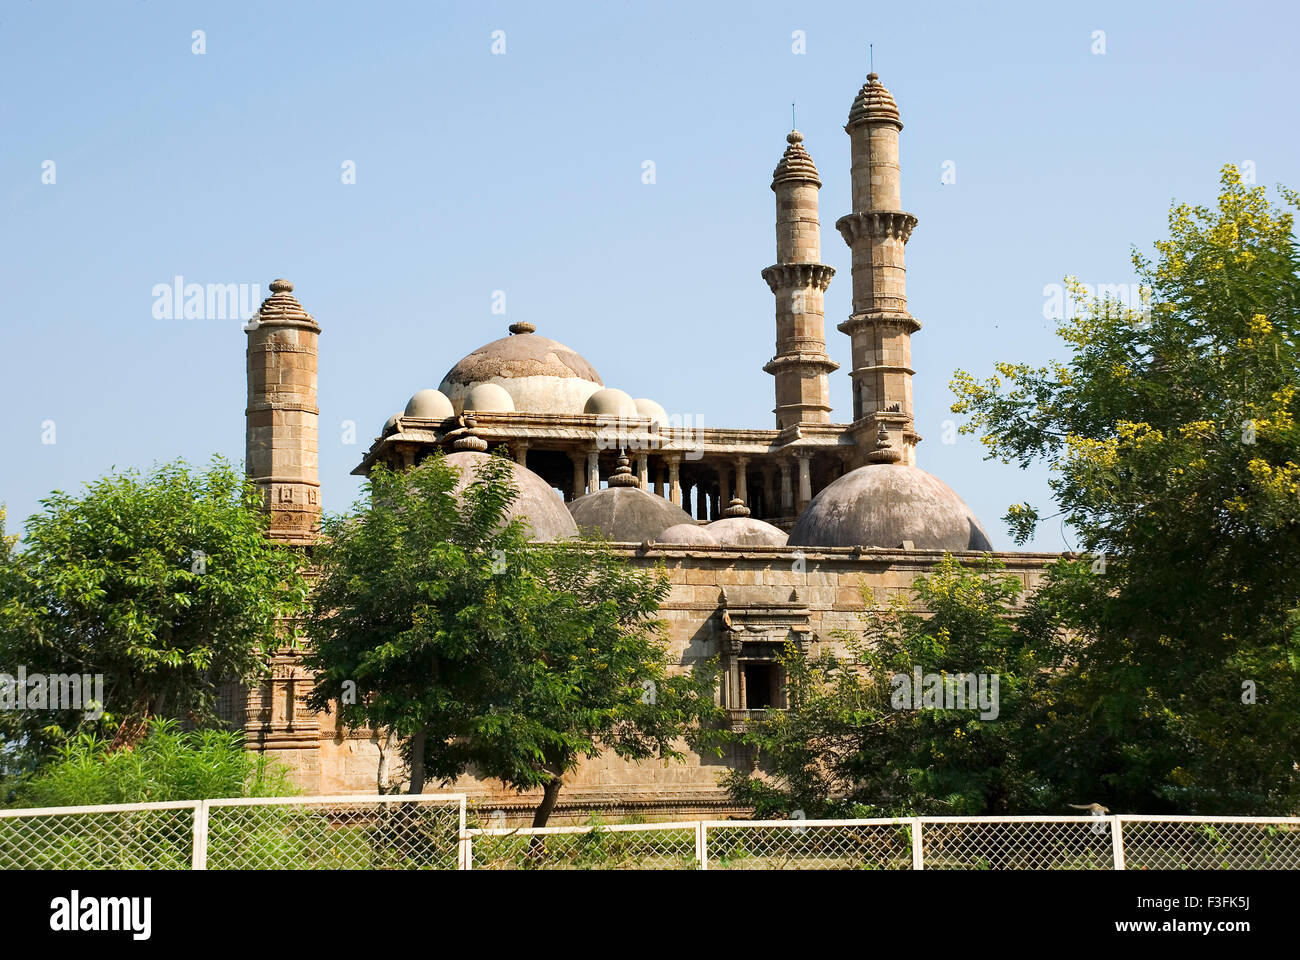 Champaner-Pavagadh 15. Centuryte Herrscher Mahmud Begda Jami Masjid komplexe archäologischer Park Champaner Stockfoto